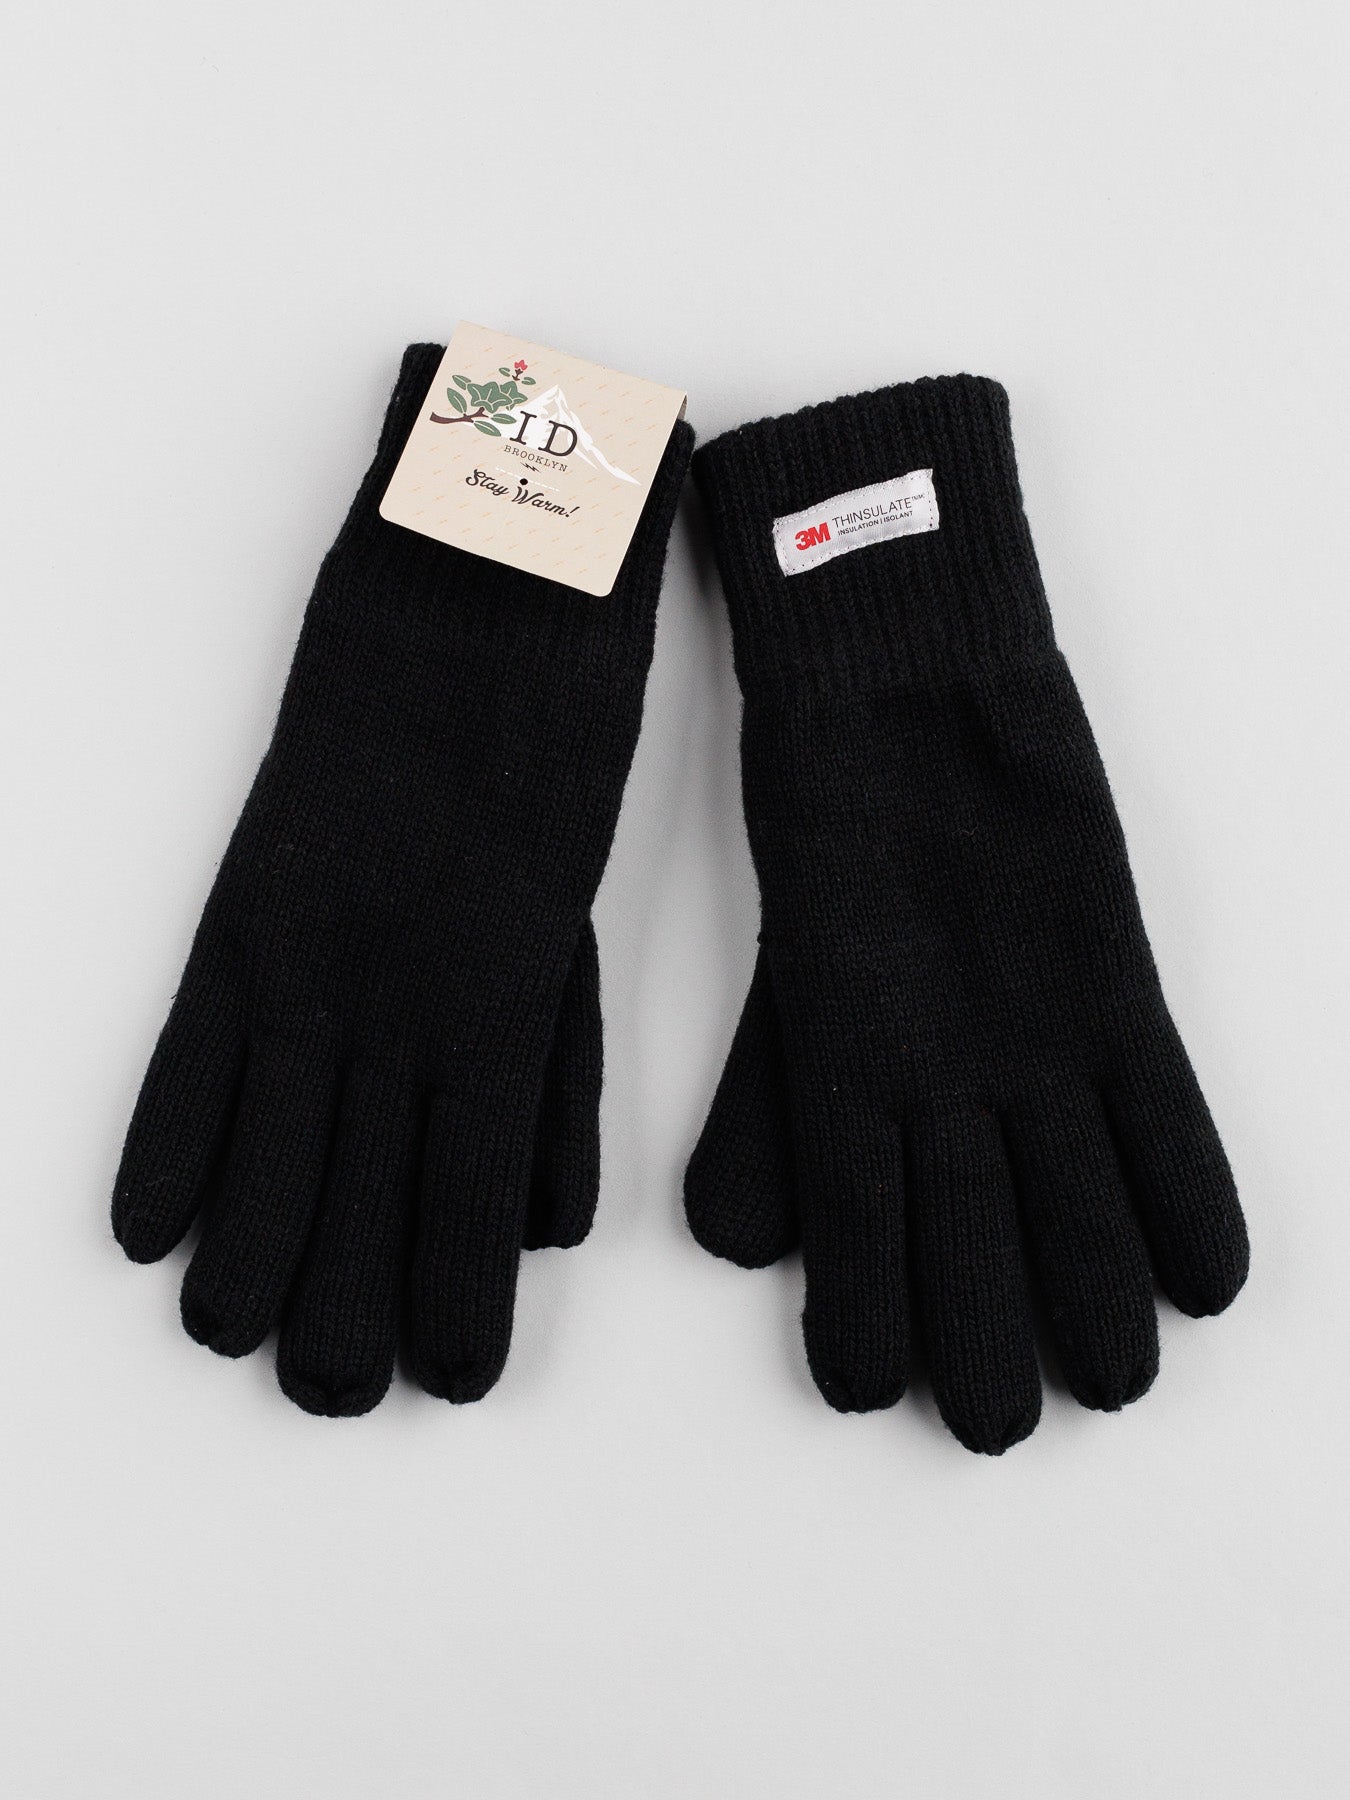 3M Thinsulate glove